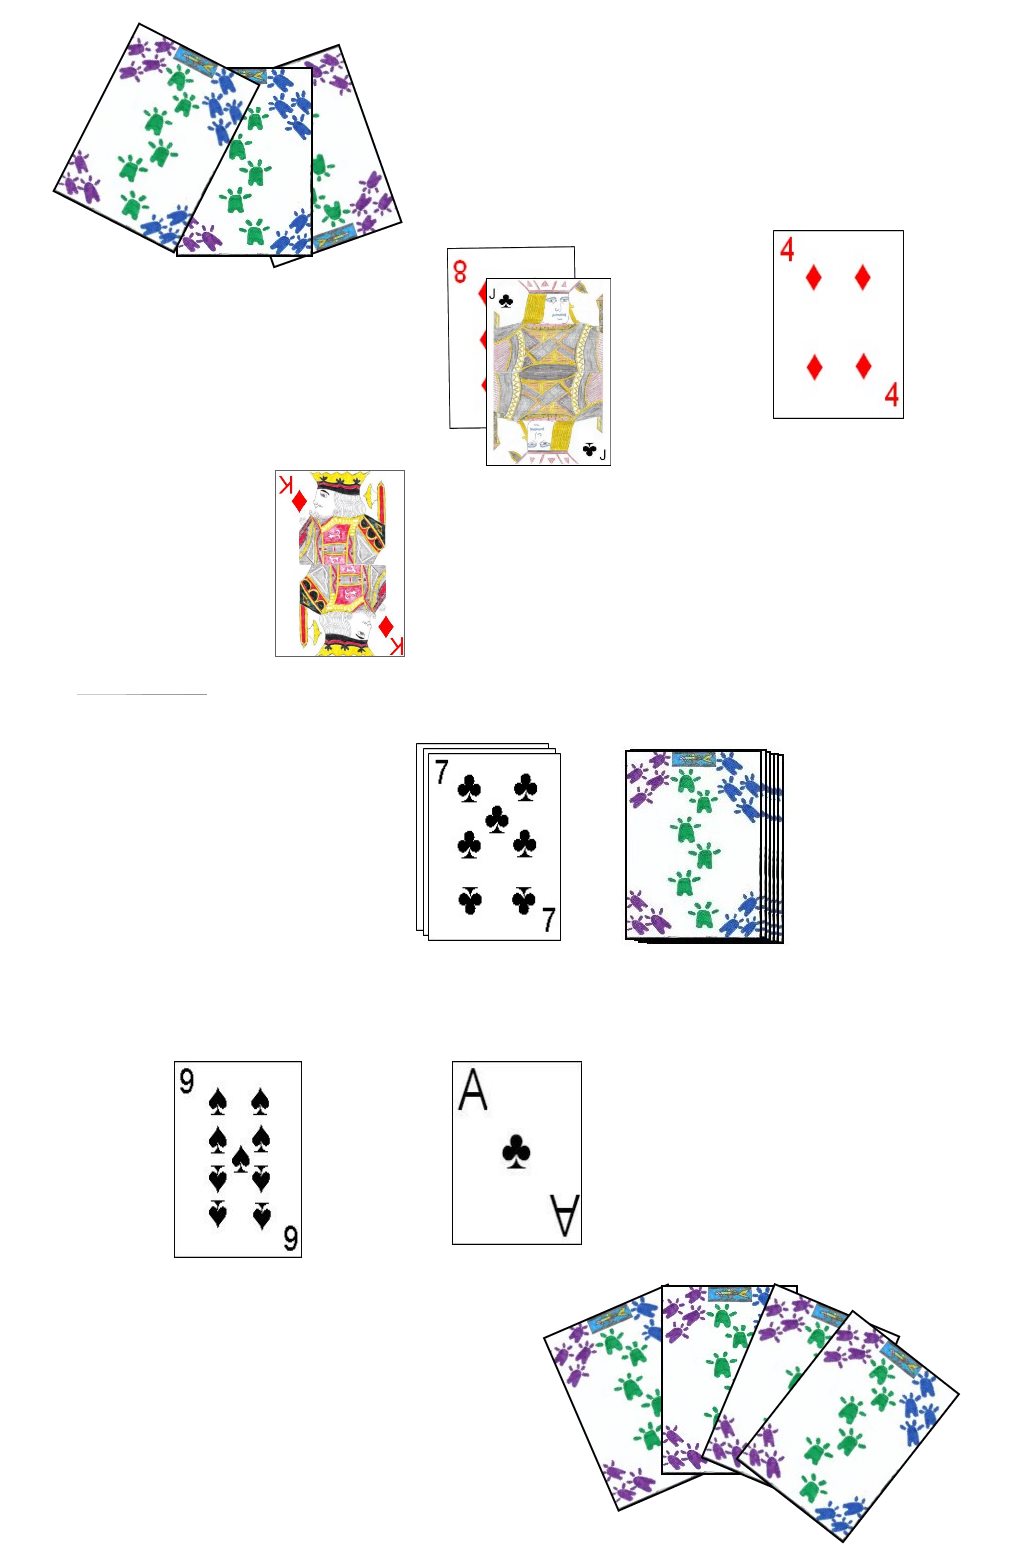 Cuttle card game in progress